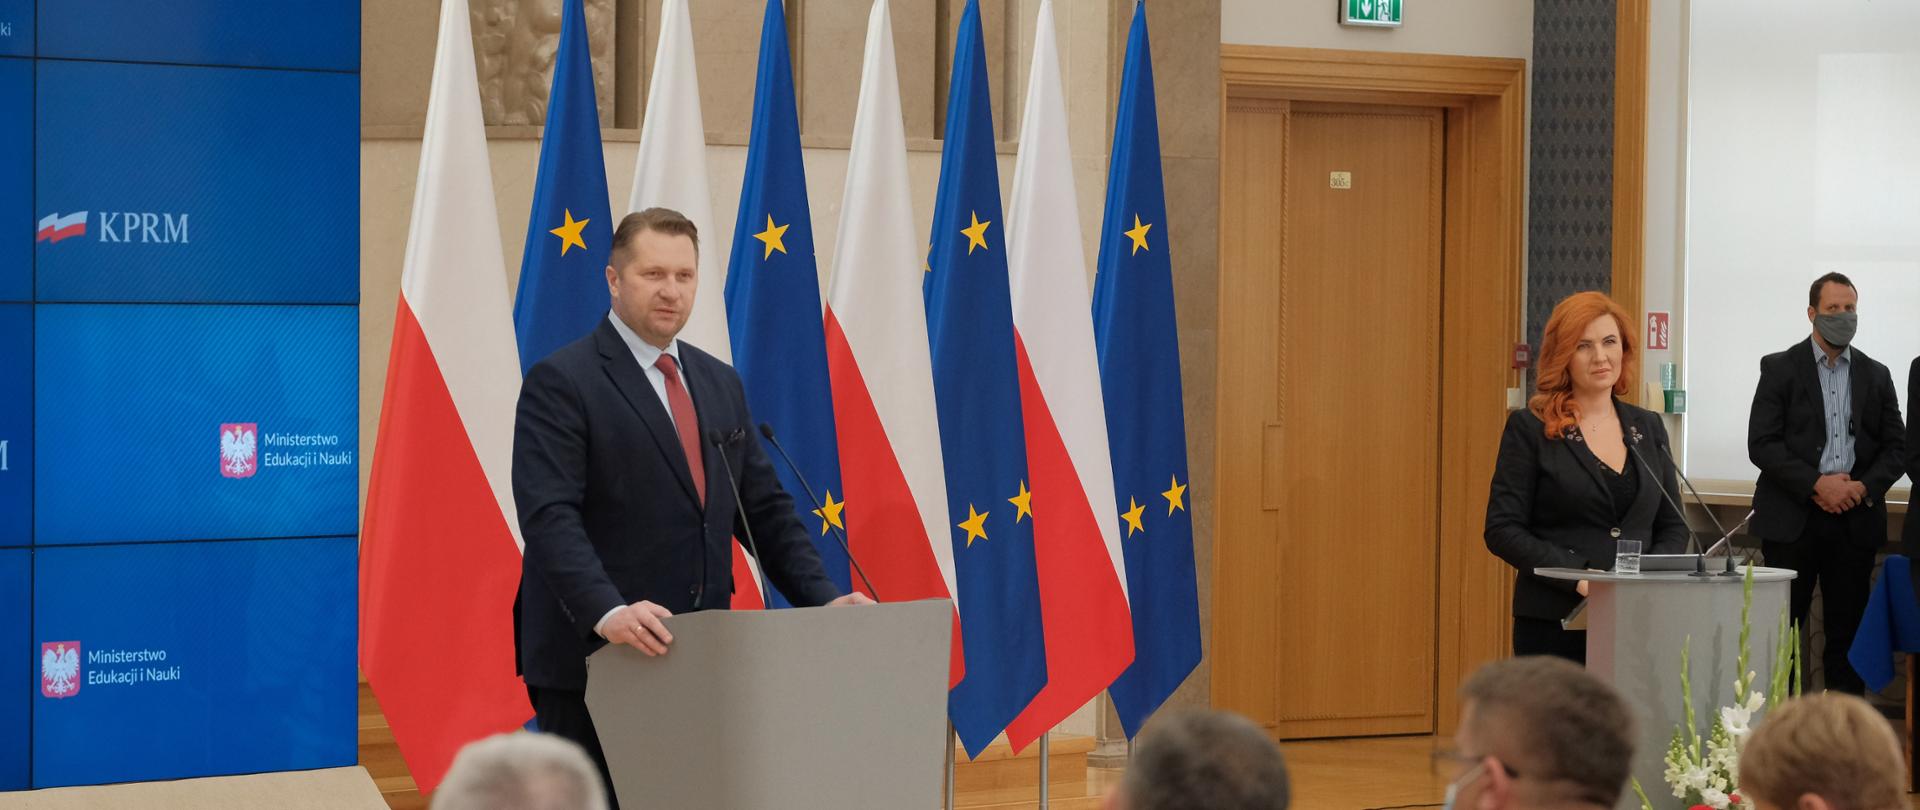 na śroku zdjęcia widać ministra Przemysława Czarnka przemawiającego do mikrofonu przy mównicy. Minister stoi na tle flag Polski i UE. z prawej strony zdjęcia stoi Rzecznik Prasowy MEiN Anna Ostrowska. 